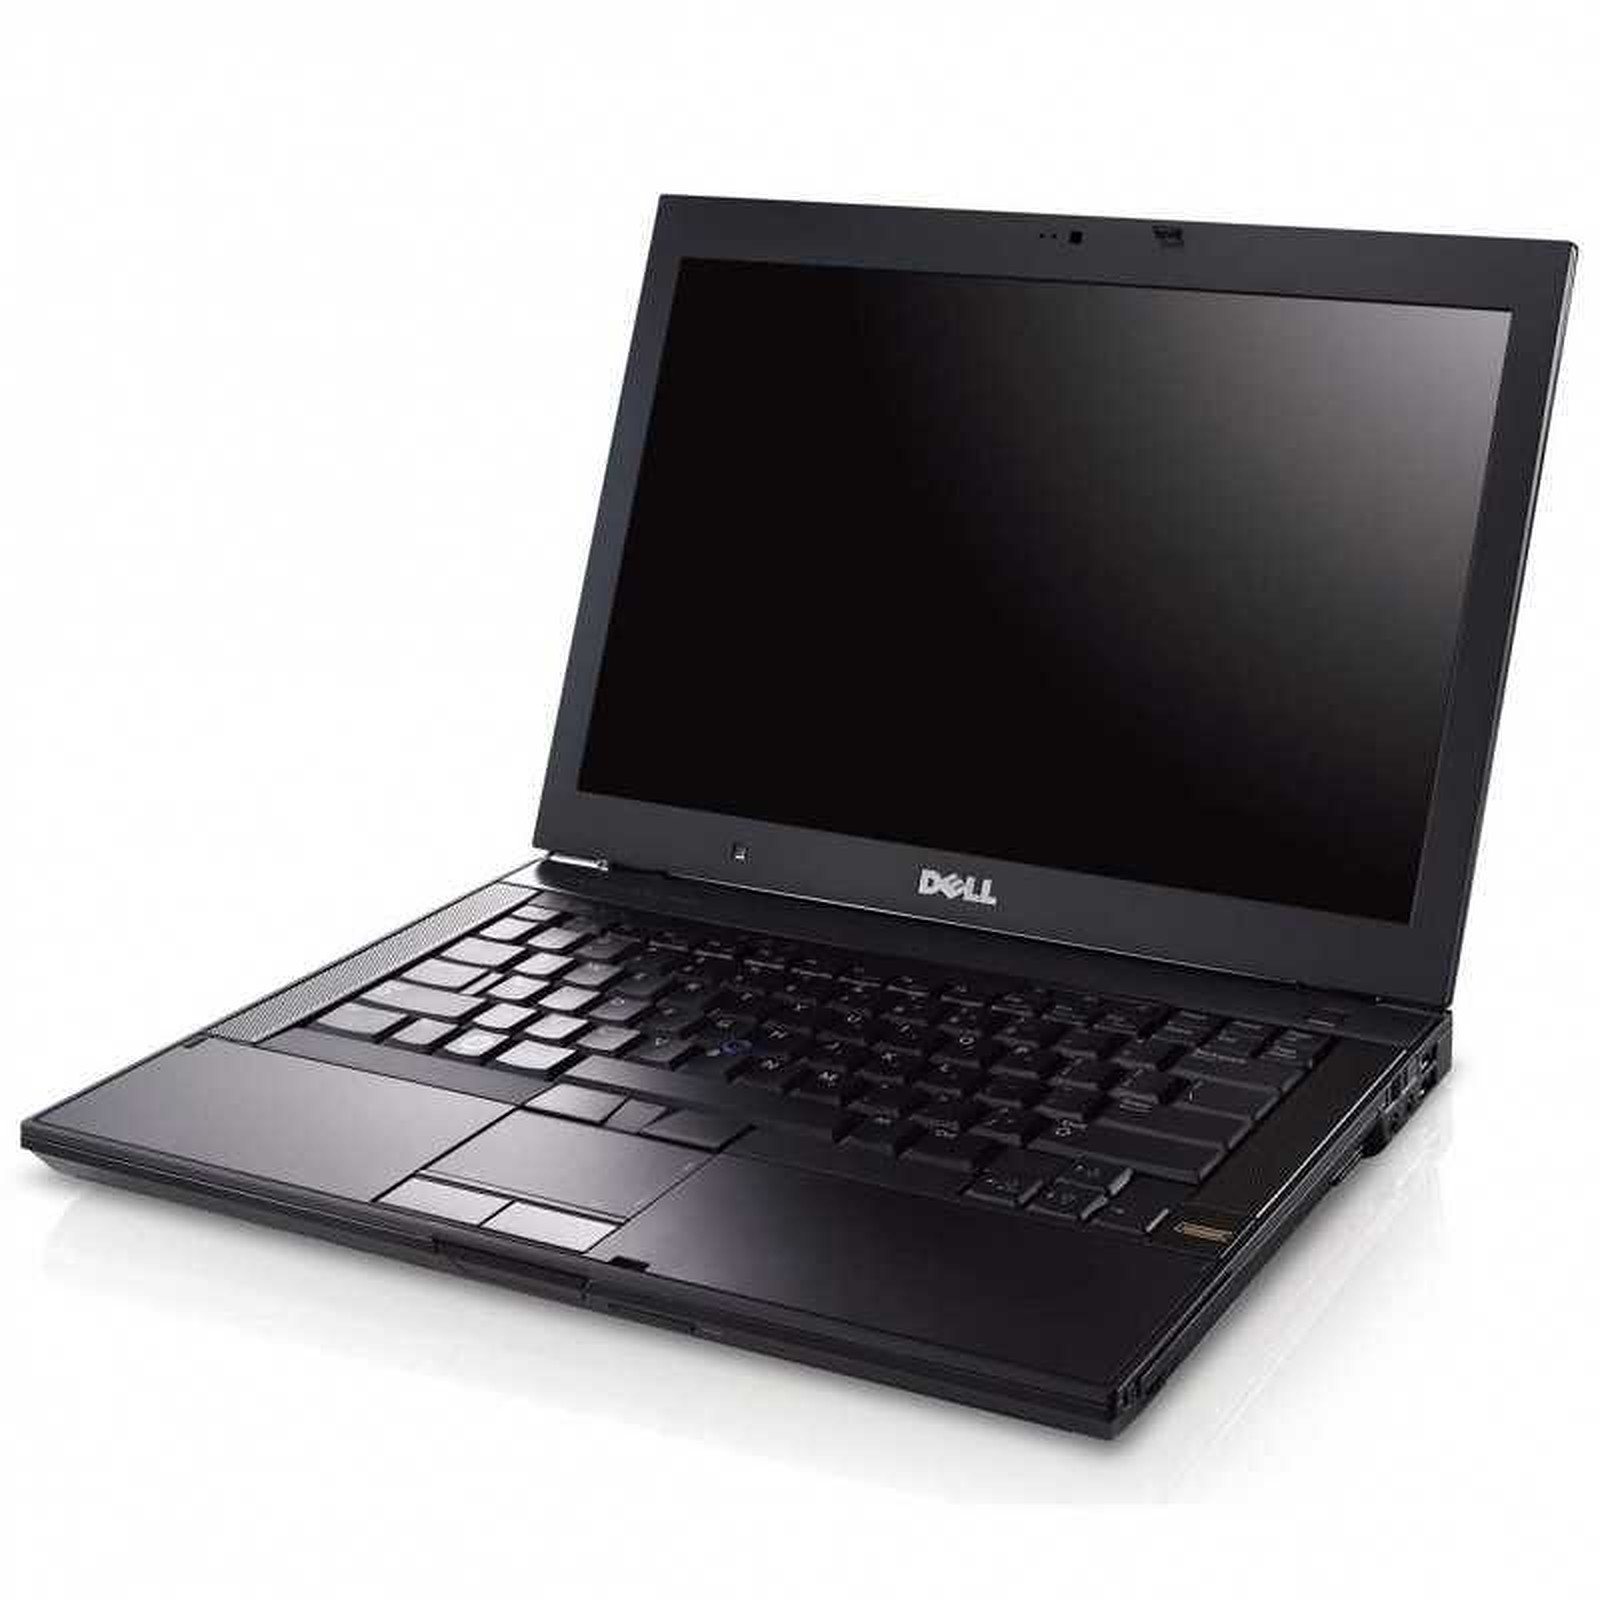 Dell Latitude E6400 (E6400-B-4306) (E6400-B) · Reconditionne - PC portable reconditionne Dell